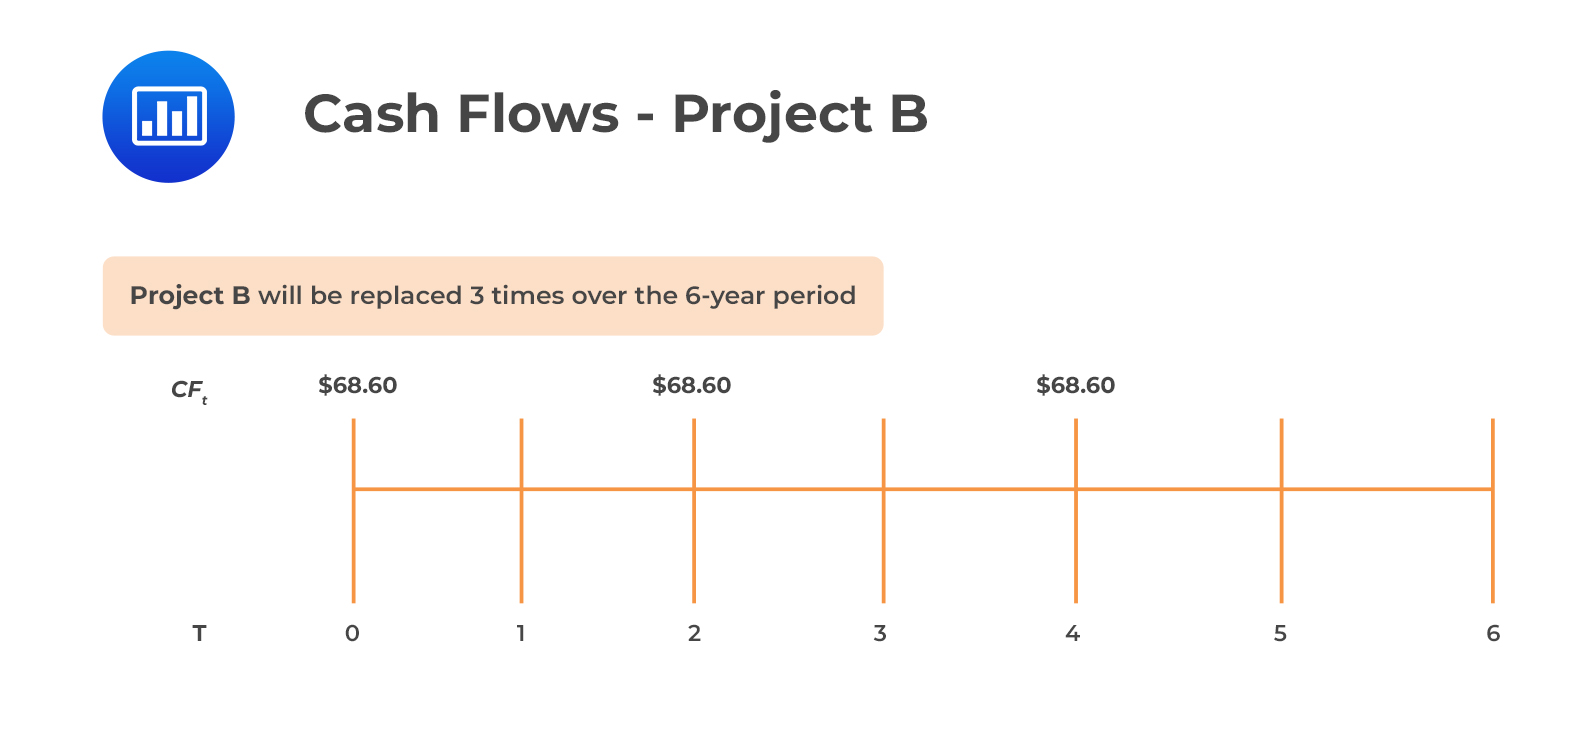 Cash Flows - Project B